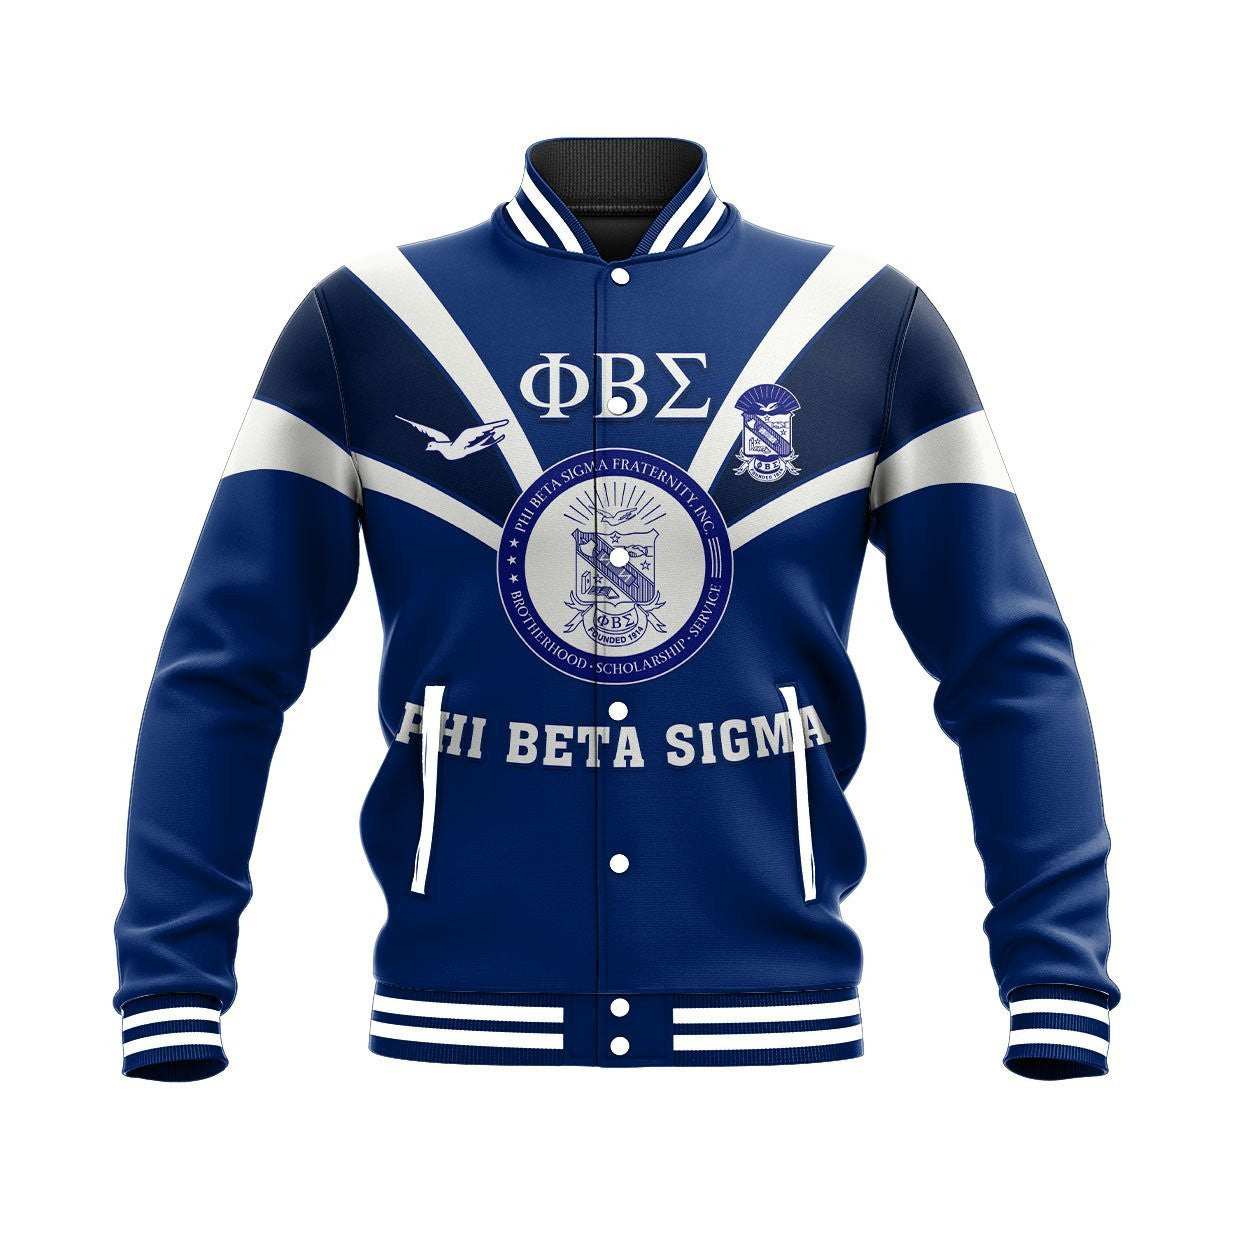 Fraternity Jacket - Phi Beta Sigma - Tusk Style Baseball Jacket